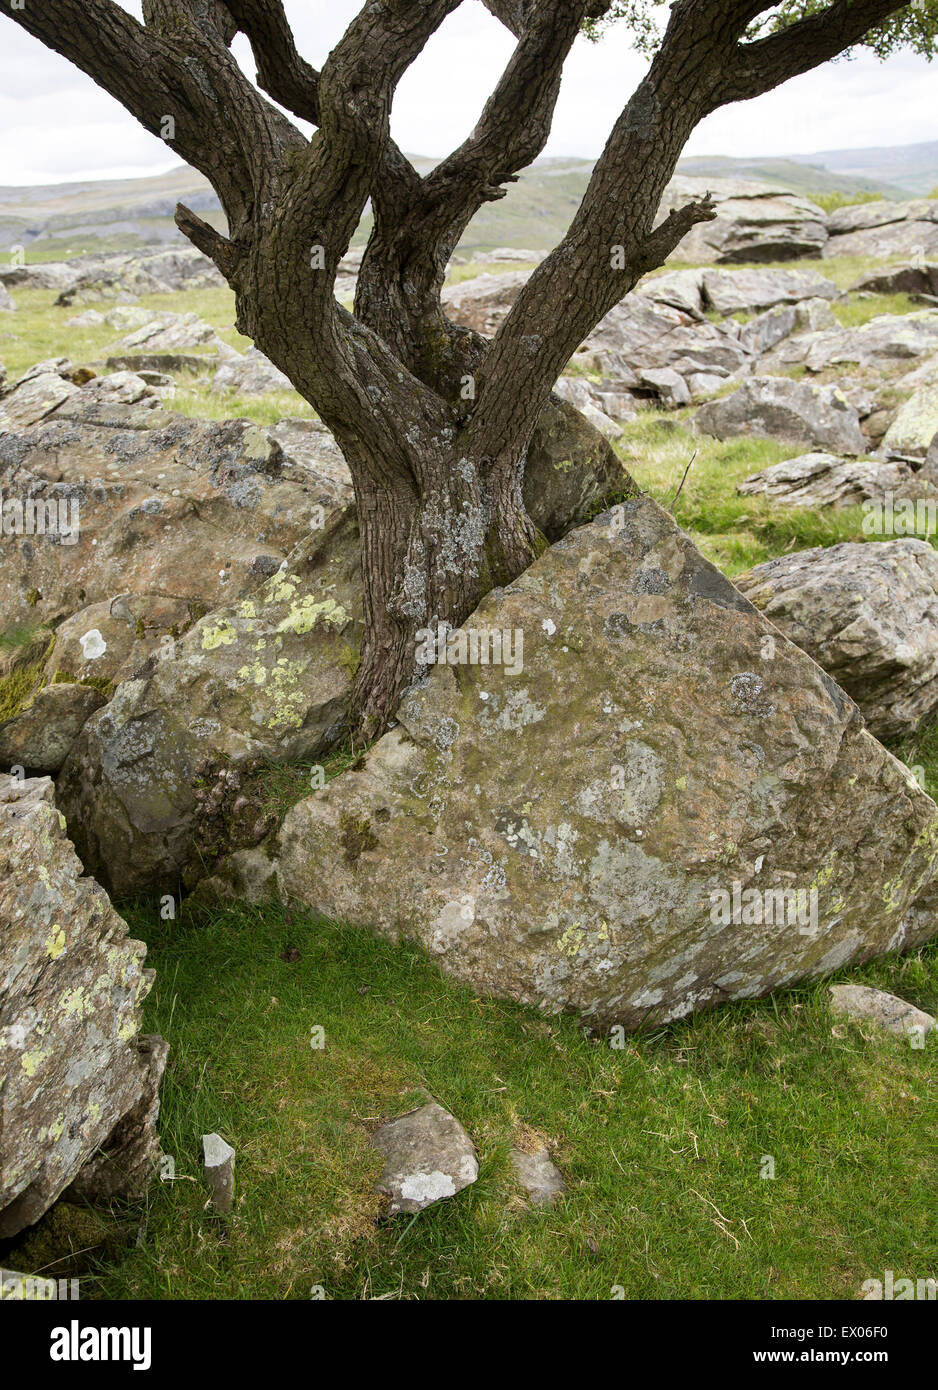 La météorisation biotiques comme arbre groupes rock apart, Austwick, Yorkshire Dales national park, England, UK Banque D'Images